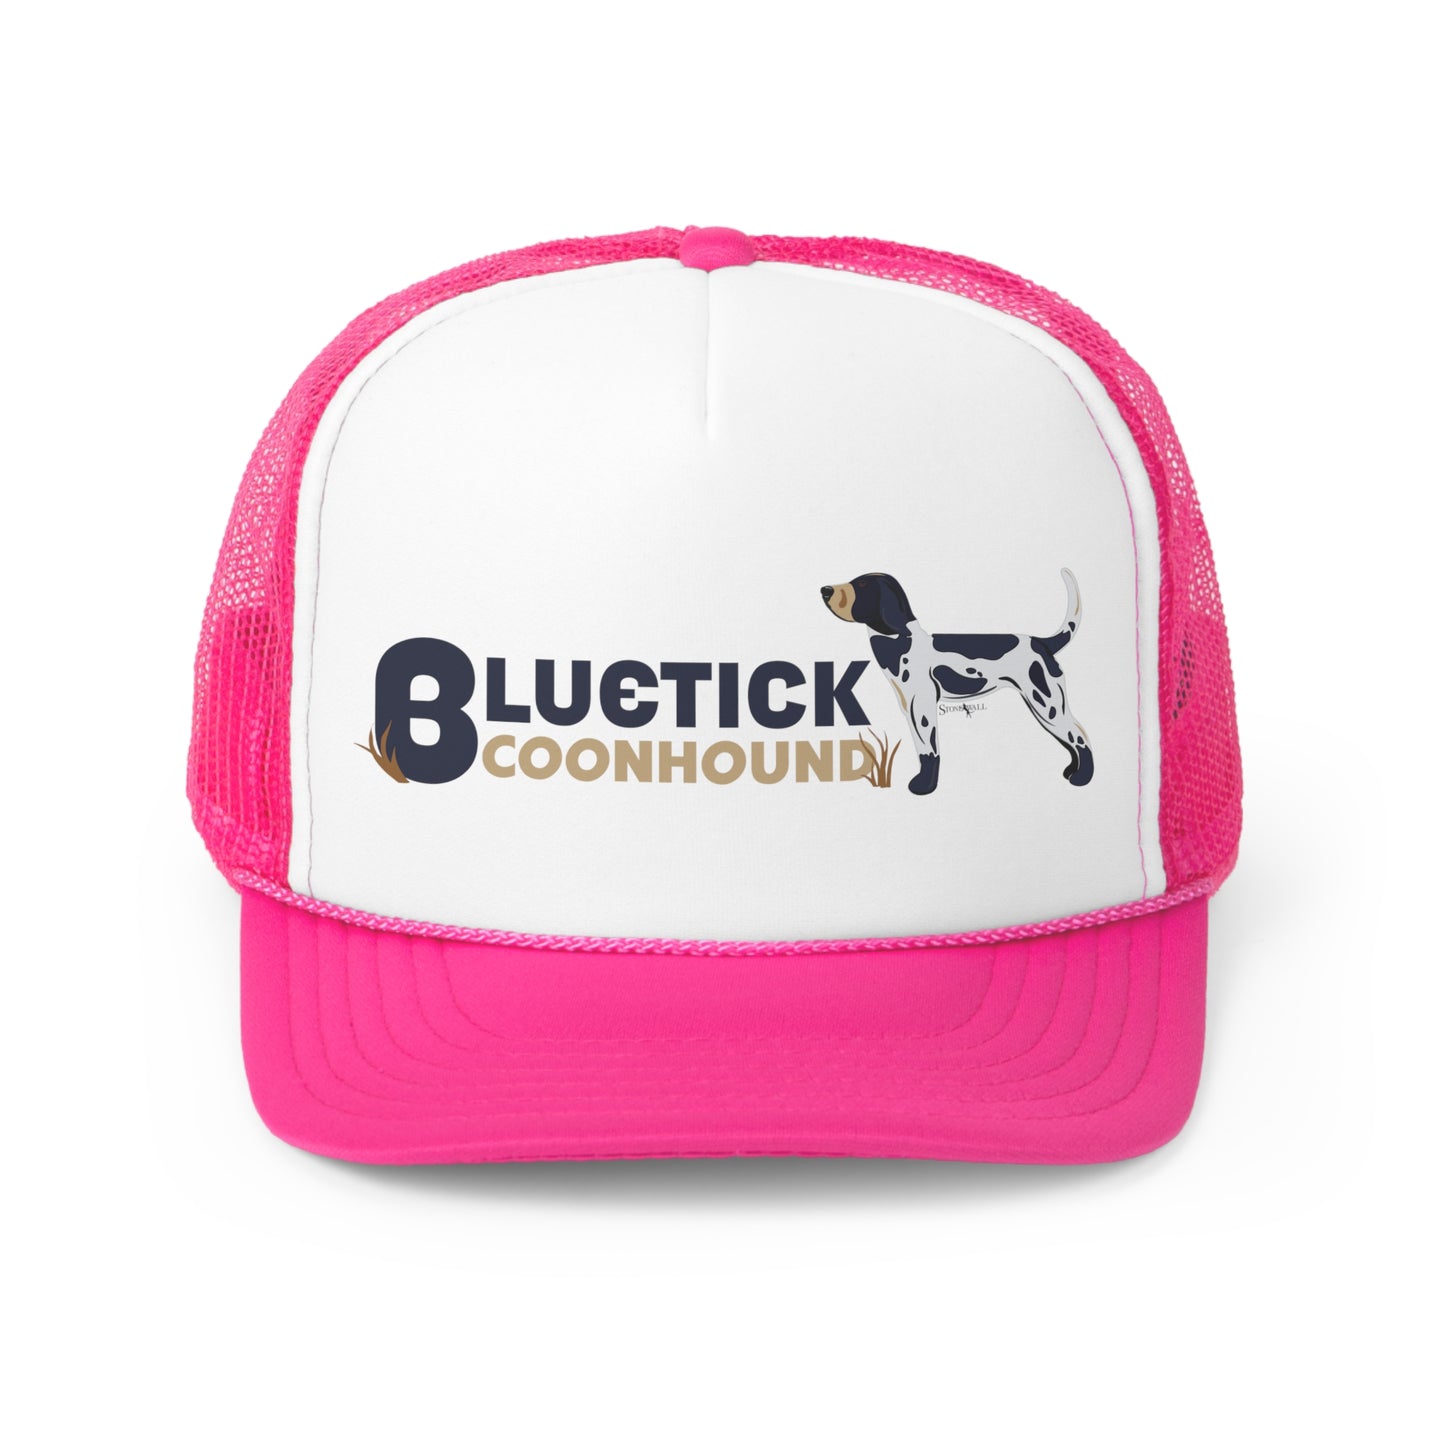 Bluetick Coonhound trucker hat